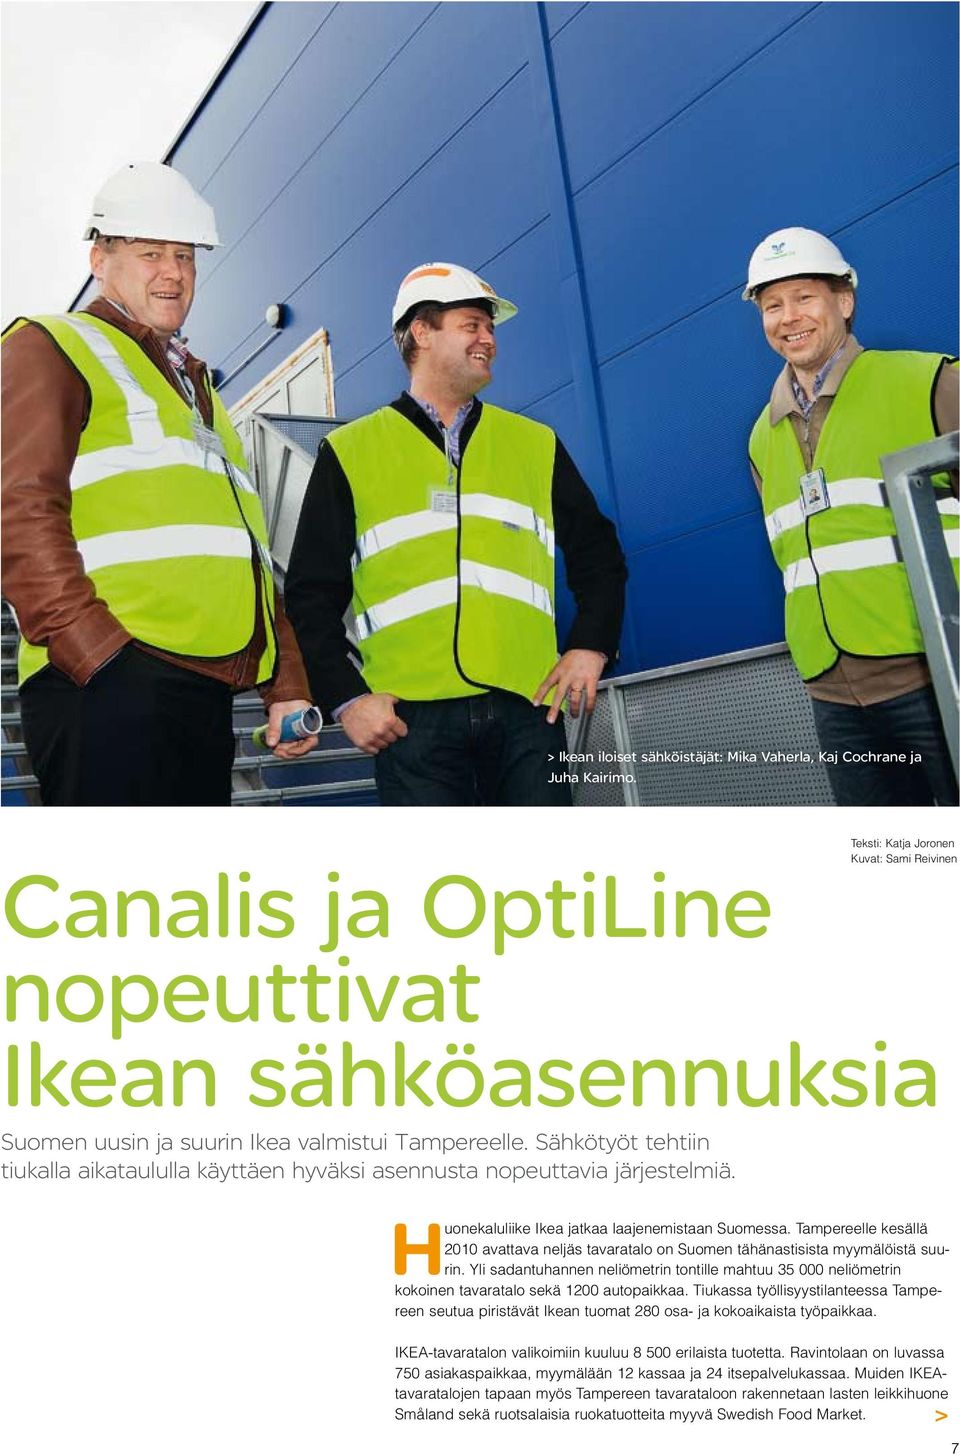 Sähkötyöt tehtiin tiukalla aikataululla käyttäen hyväksi asennusta nopeuttavia järjestelmiä. Huonekaluliike Ikea jatkaa laajenemistaan Suomessa.